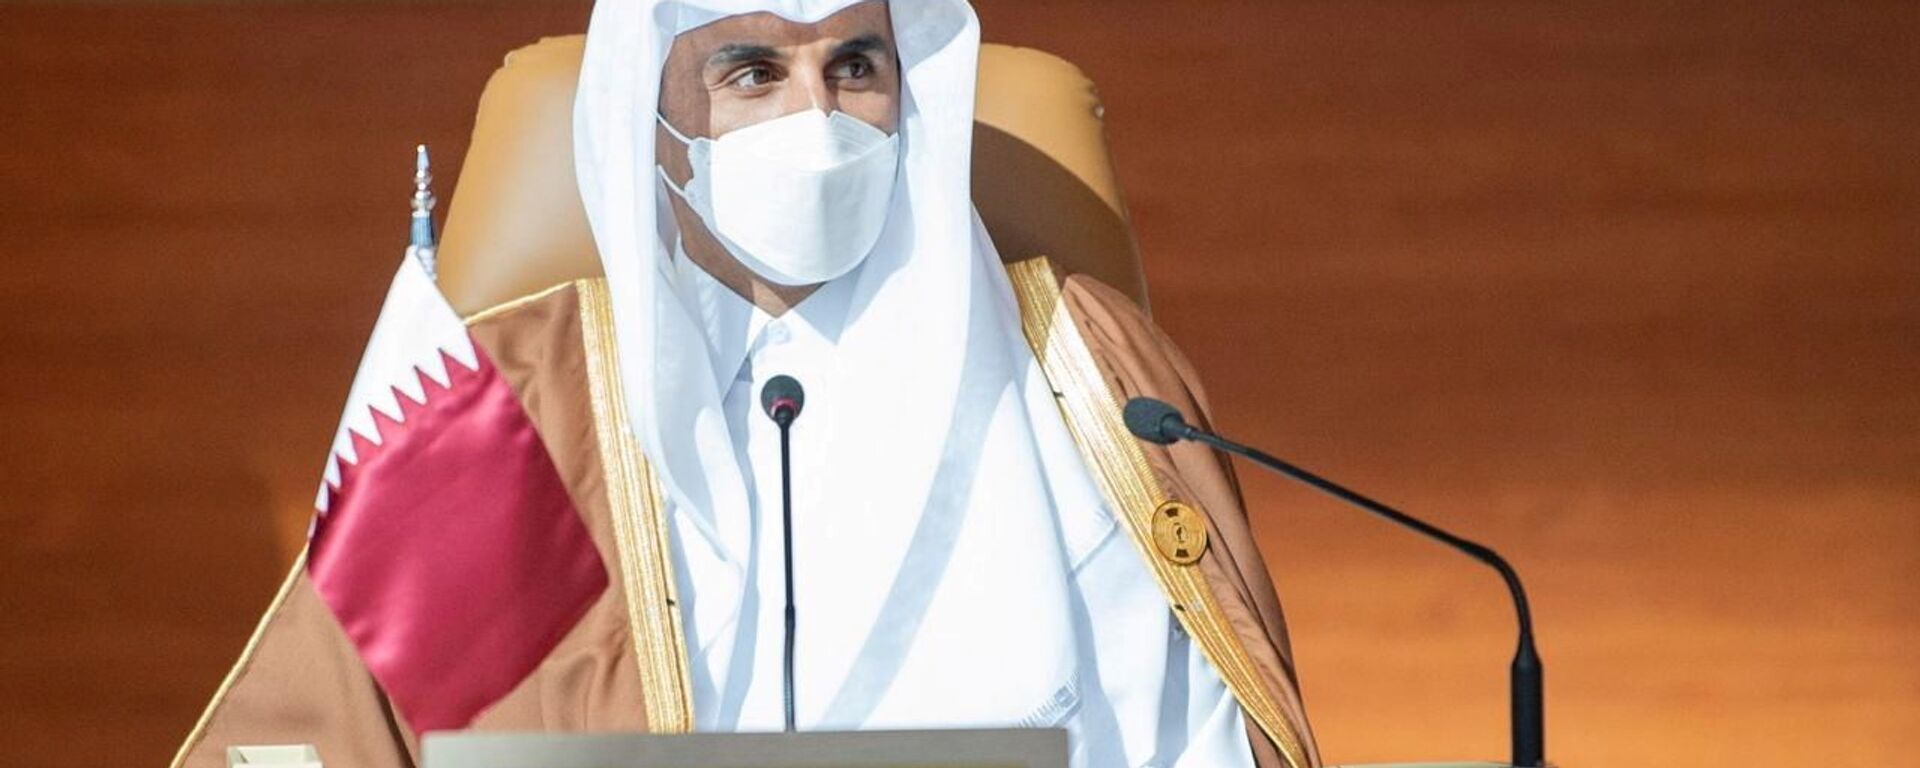 Qatar's Emir Sheikh Tamim bin Hamad al-Thani attends the Gulf Cooperation Council's (GCC) 41st Summit in Al-Ula, Saudi Arabia January 5, 2021 - Sputnik International, 1920, 21.01.2021